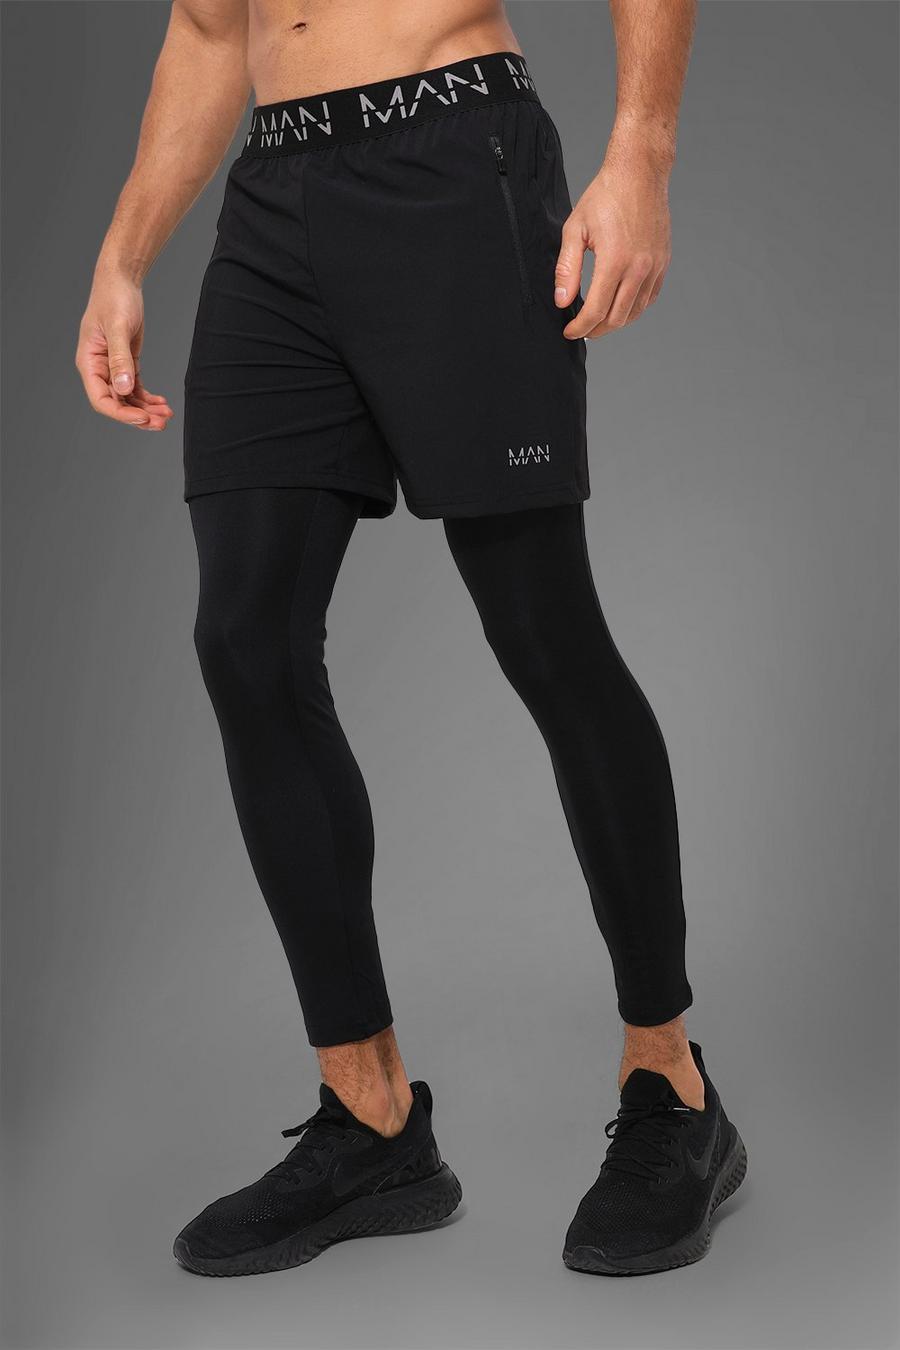 Black svart Man Active Gym 2-In-1 Legging Shorts